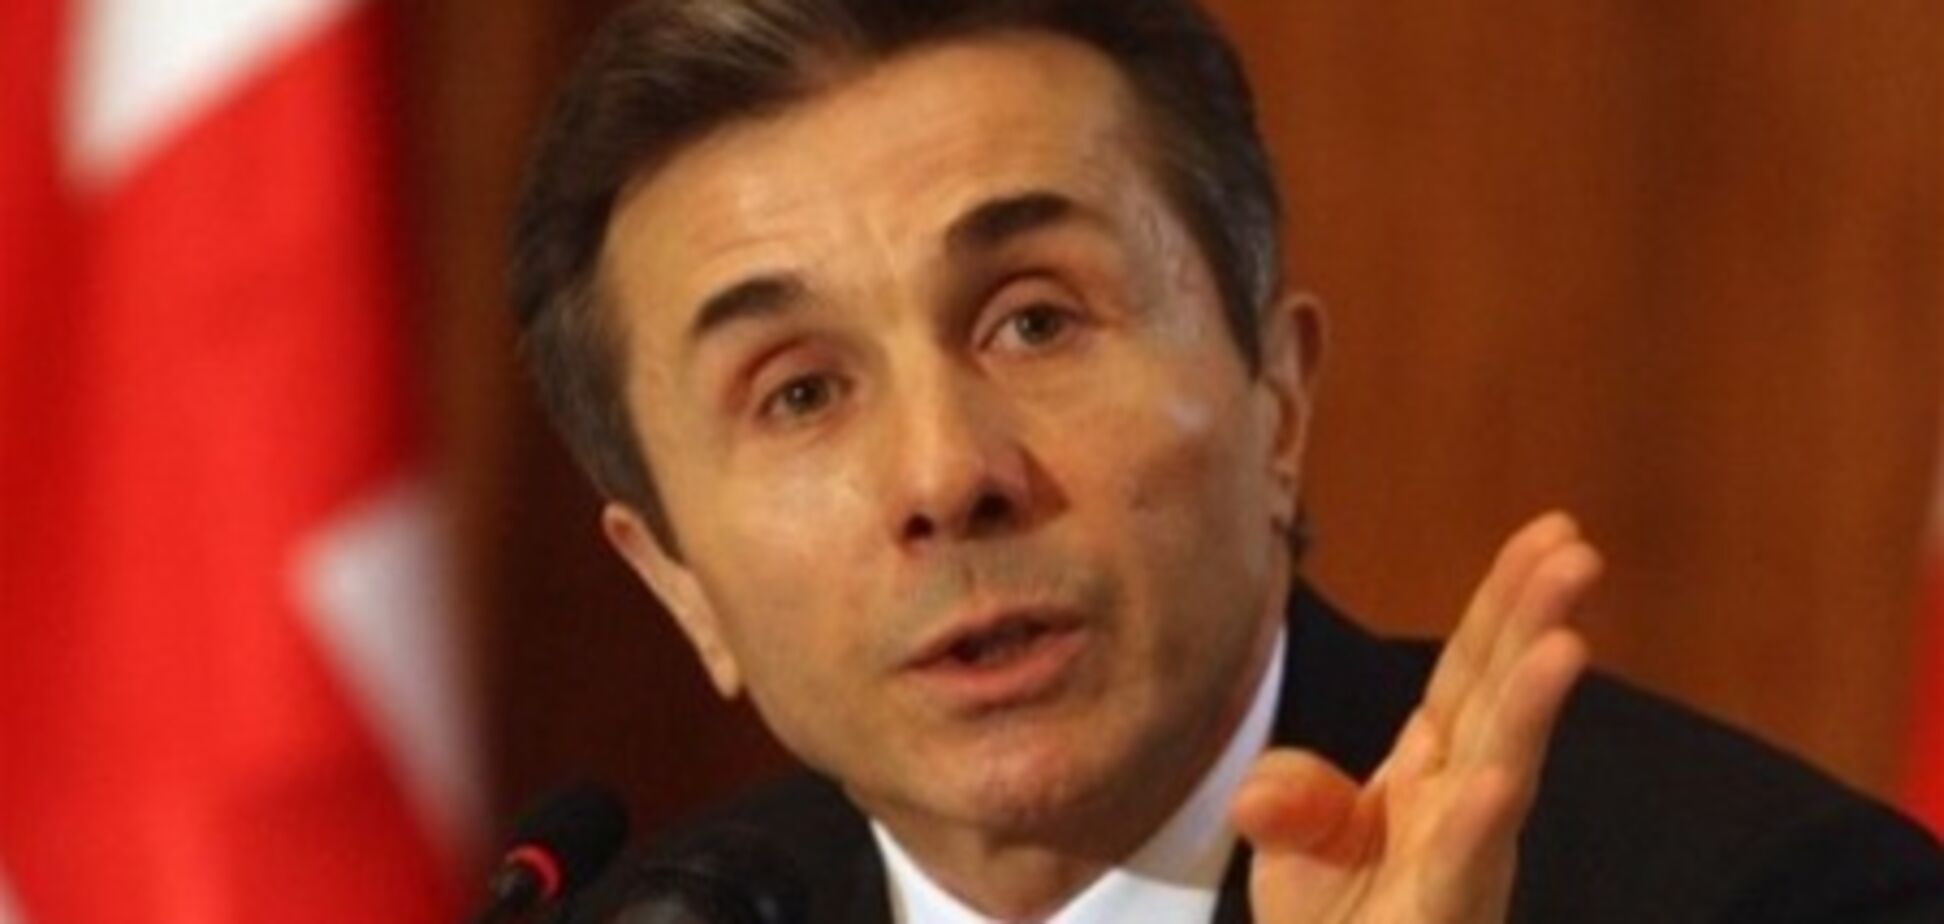 Іванішвілі обраний почесним головою 'Грузинської мрії'